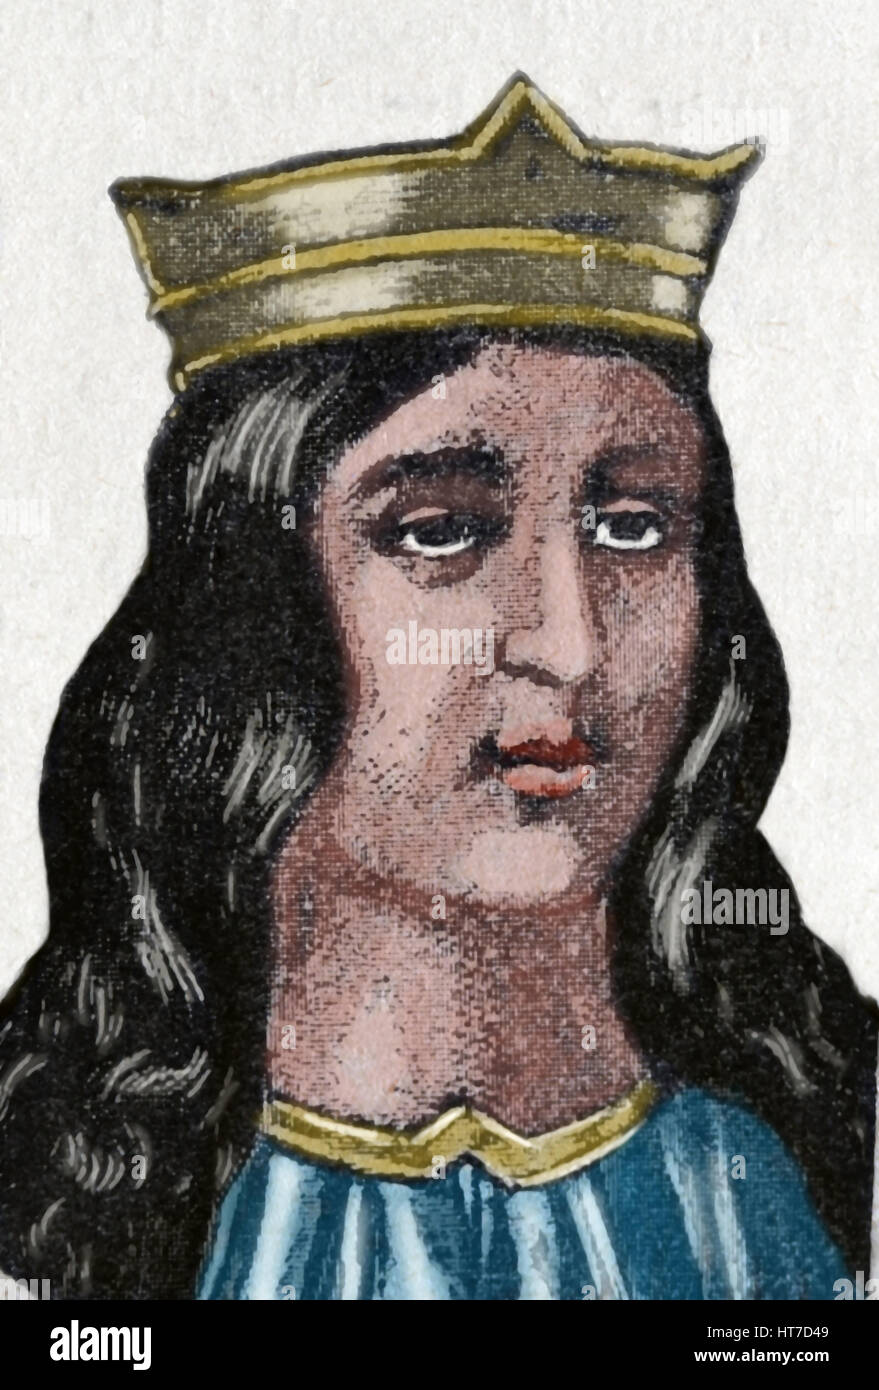 Maria de Molina o Lady di Molina (1265-1321). Regina consorte di Castilla y León da 1284-1295. Ritratto. Incisione. Soain. Foto Stock